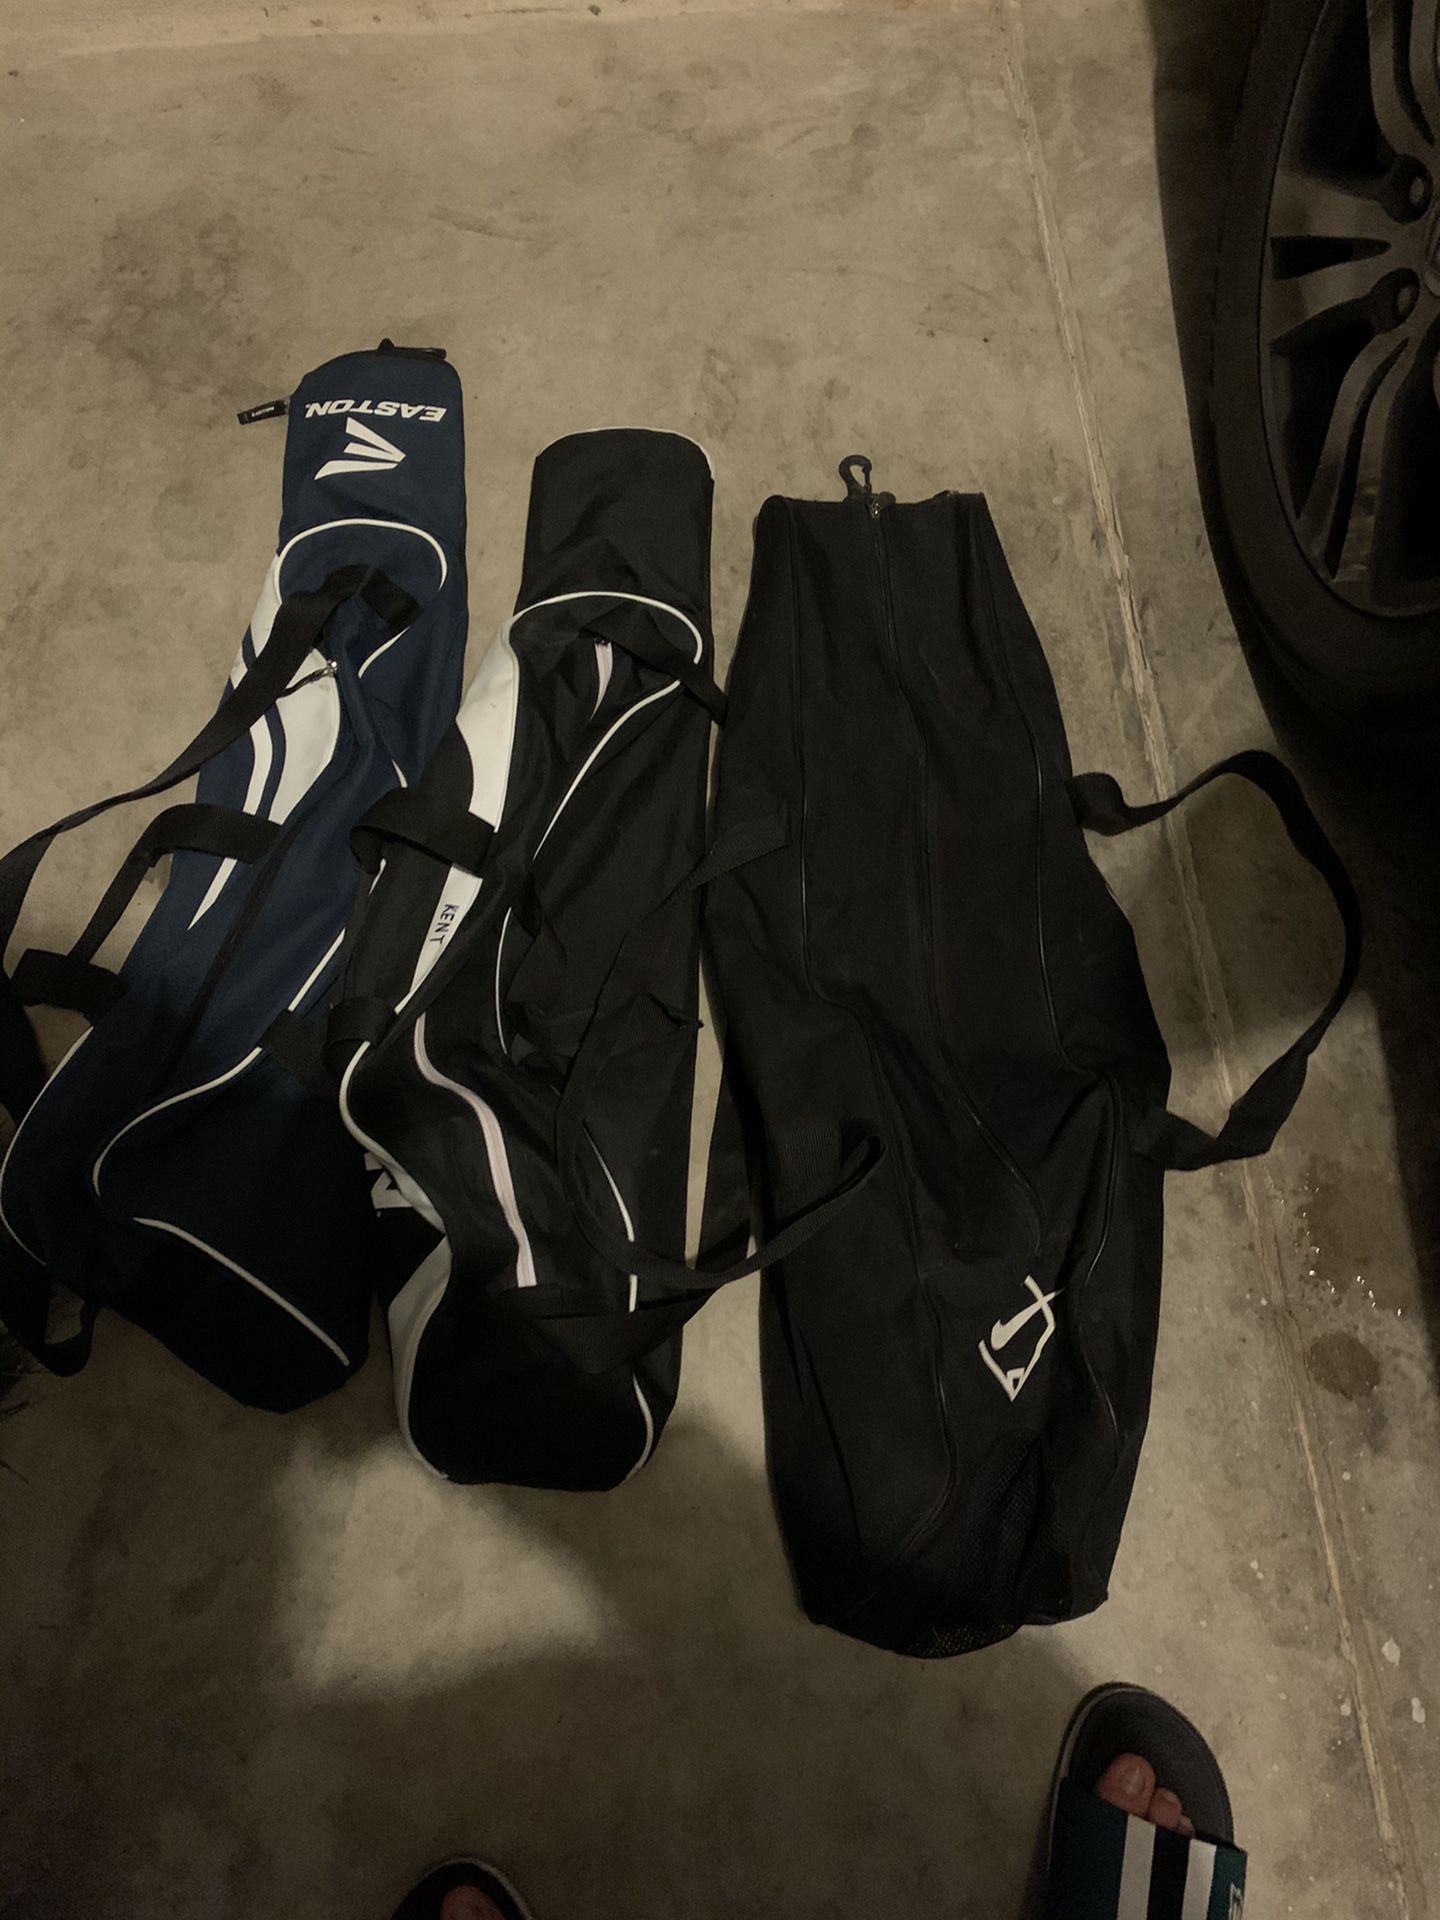 Baseball Bags 3 2 Easton 1 Nike